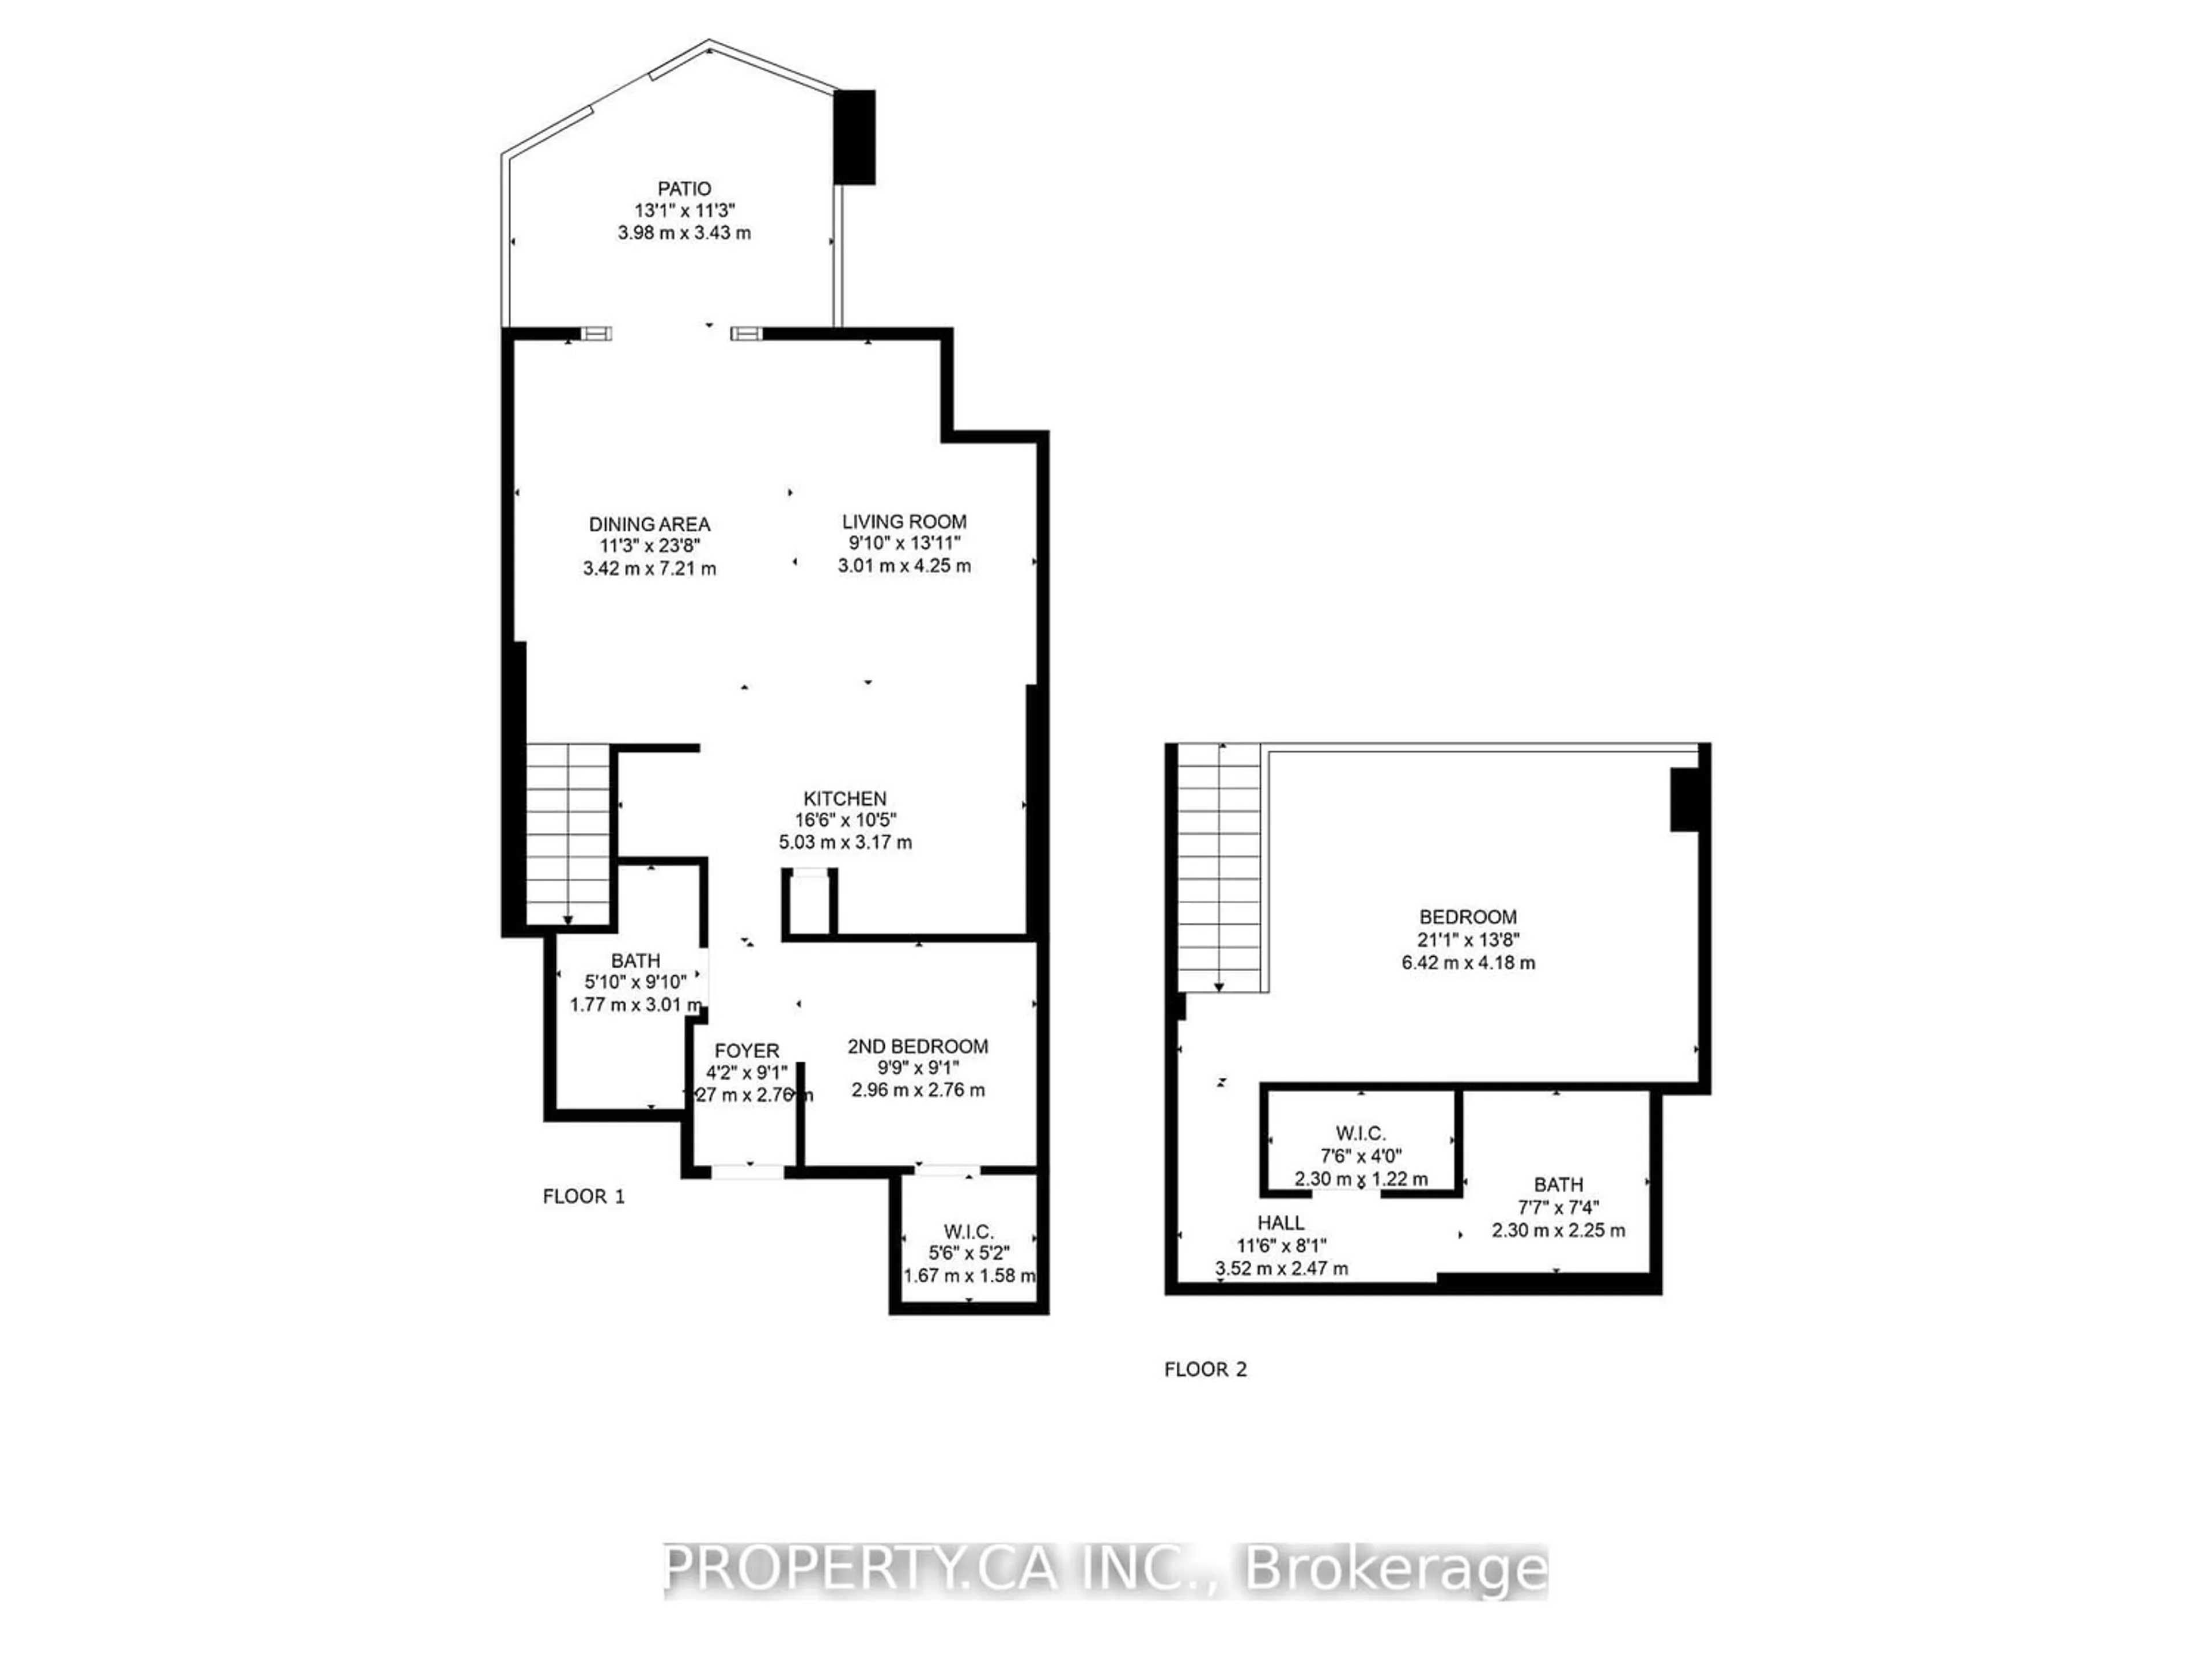 Floor plan for 363 Sorauren Ave #103, Toronto Ontario M6R 3C1